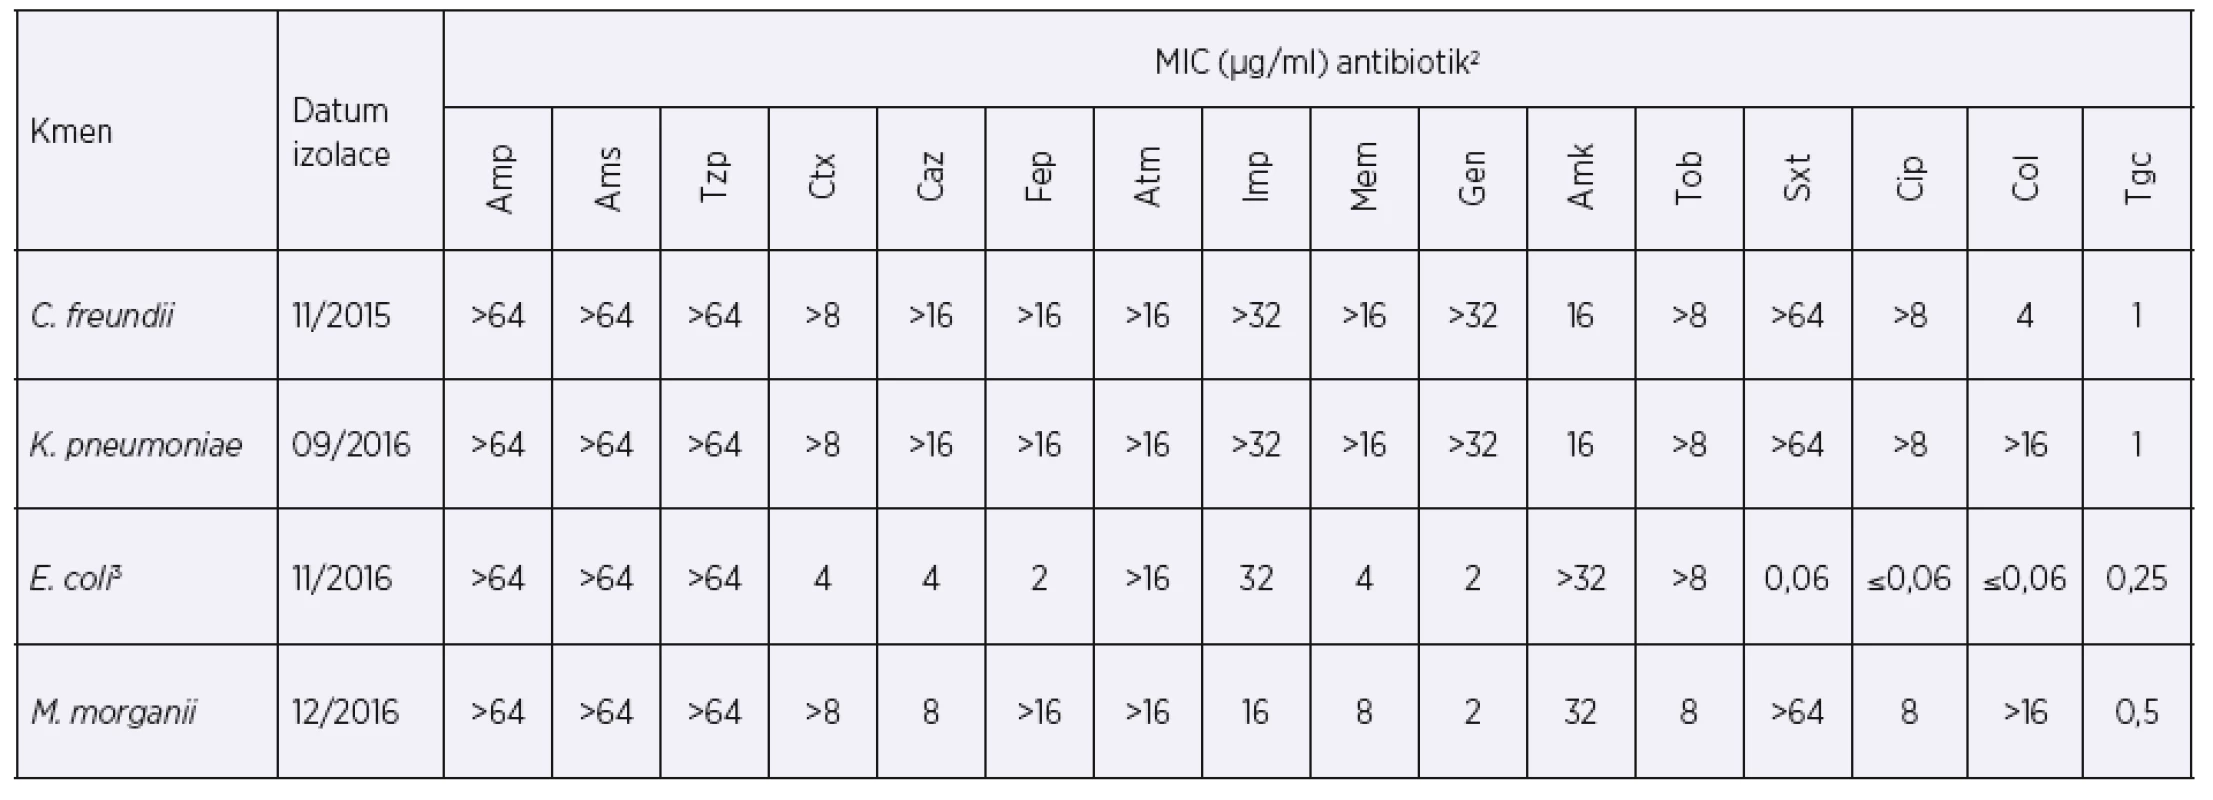 Hodnoty MIC vybraných antibiotik při prvním záchytu enterobakterií produkujících karbapenemázu typu KPC-2<br>
Table 1. MICs of selected antibiotics at the time of the first detection of KPC-2-producing enterobacteria